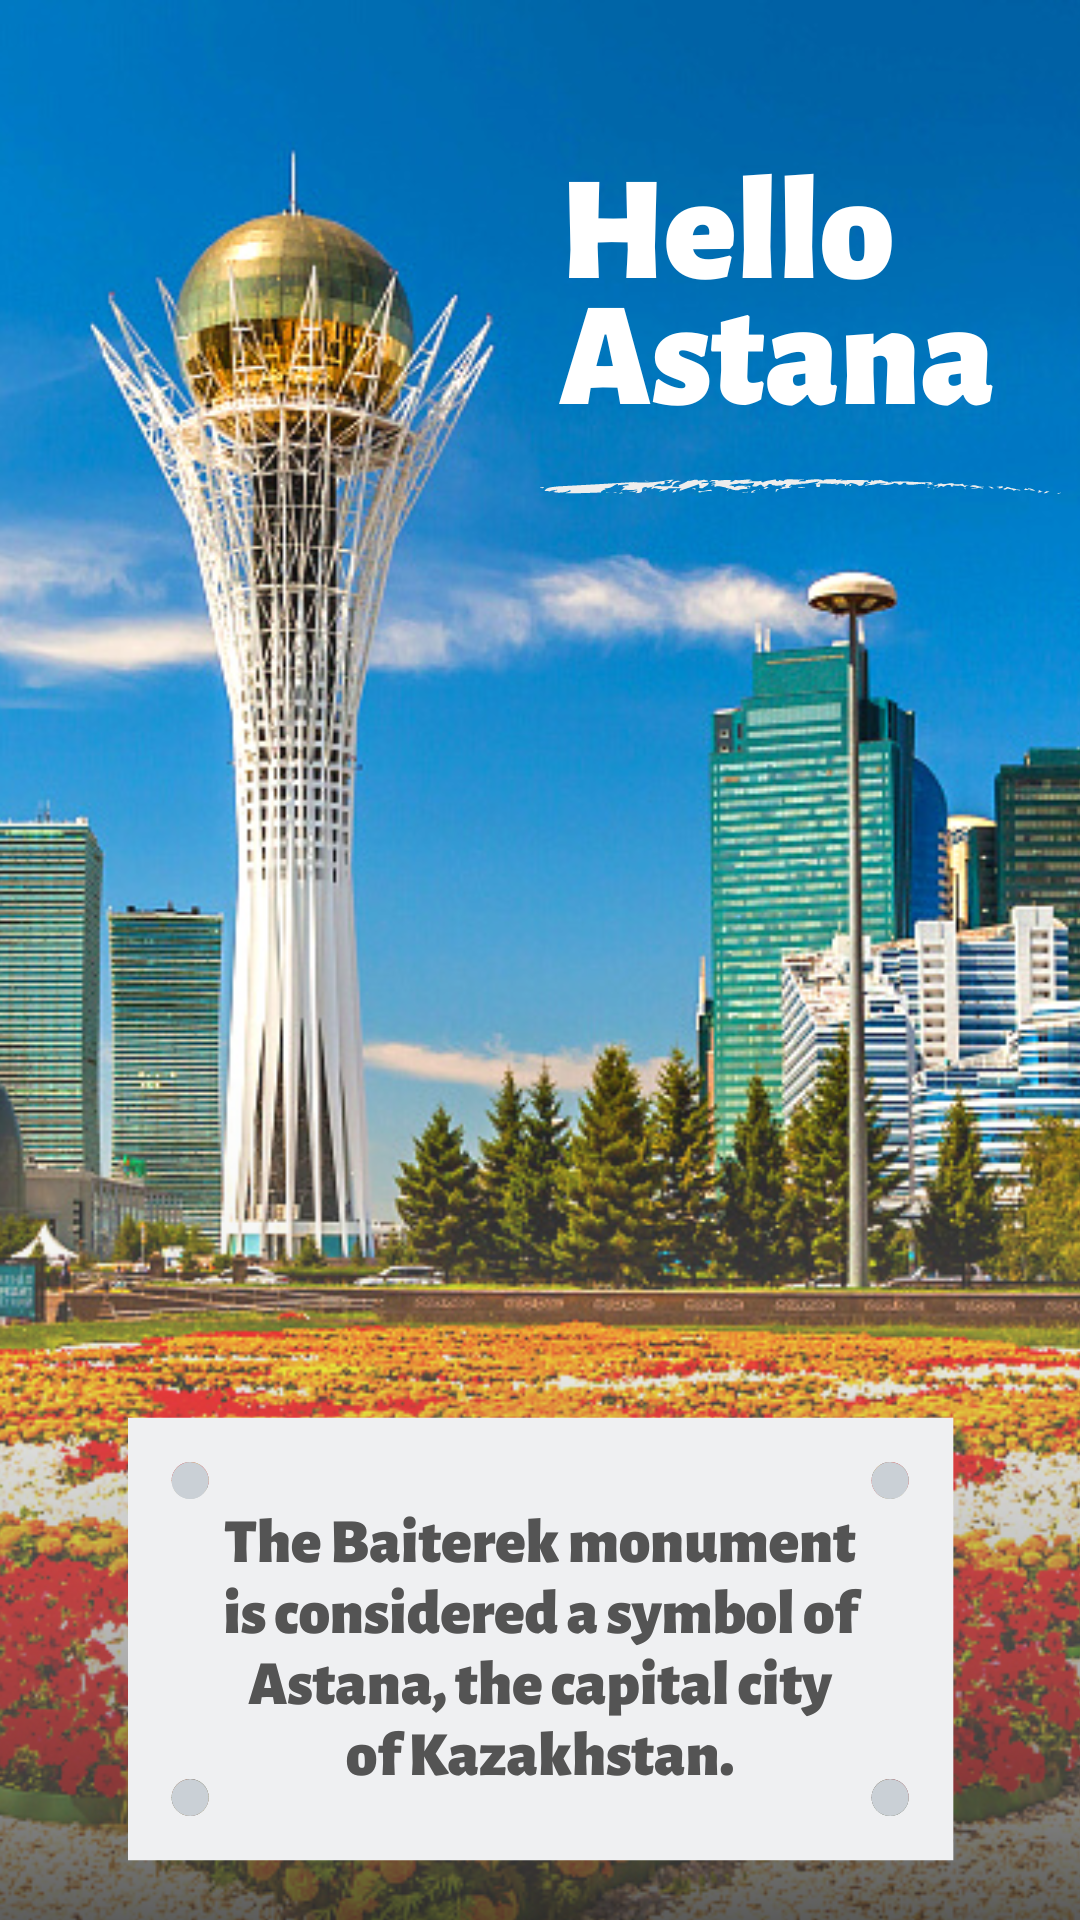 Kazakhstan's symbolic Baiterek monument